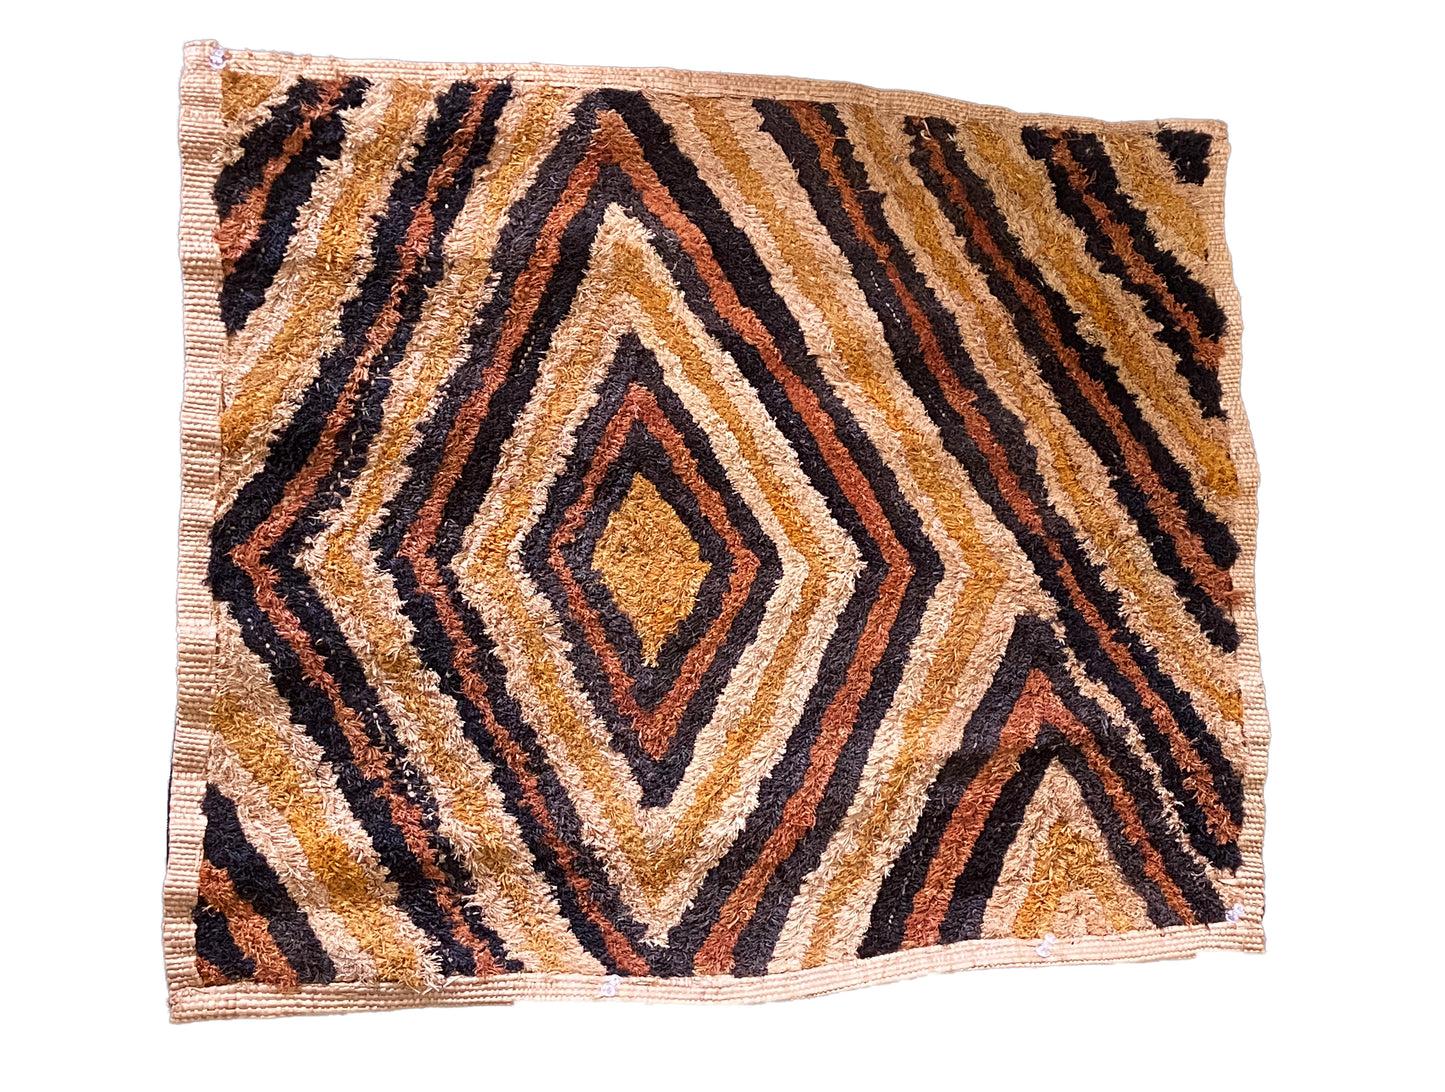 # 2036 Superb African Kuba Kasai Velvet Raffia Textile Zaire 20 "by 23.5